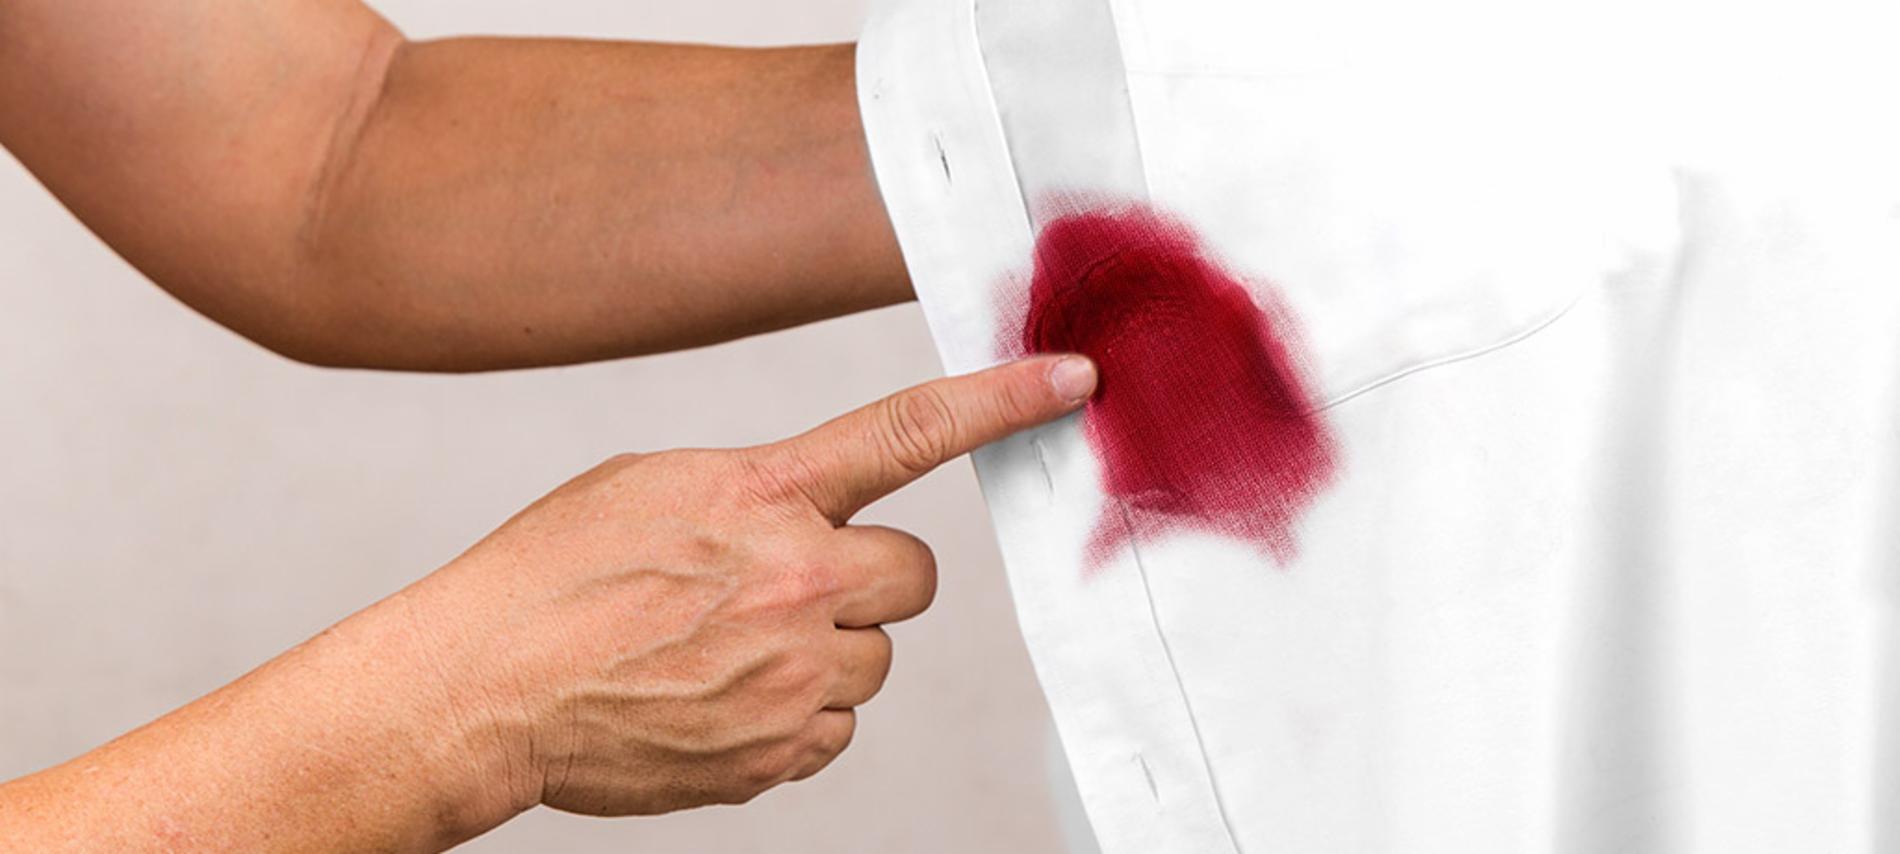 Cómo quitar manchas de vino tinto de la ropa